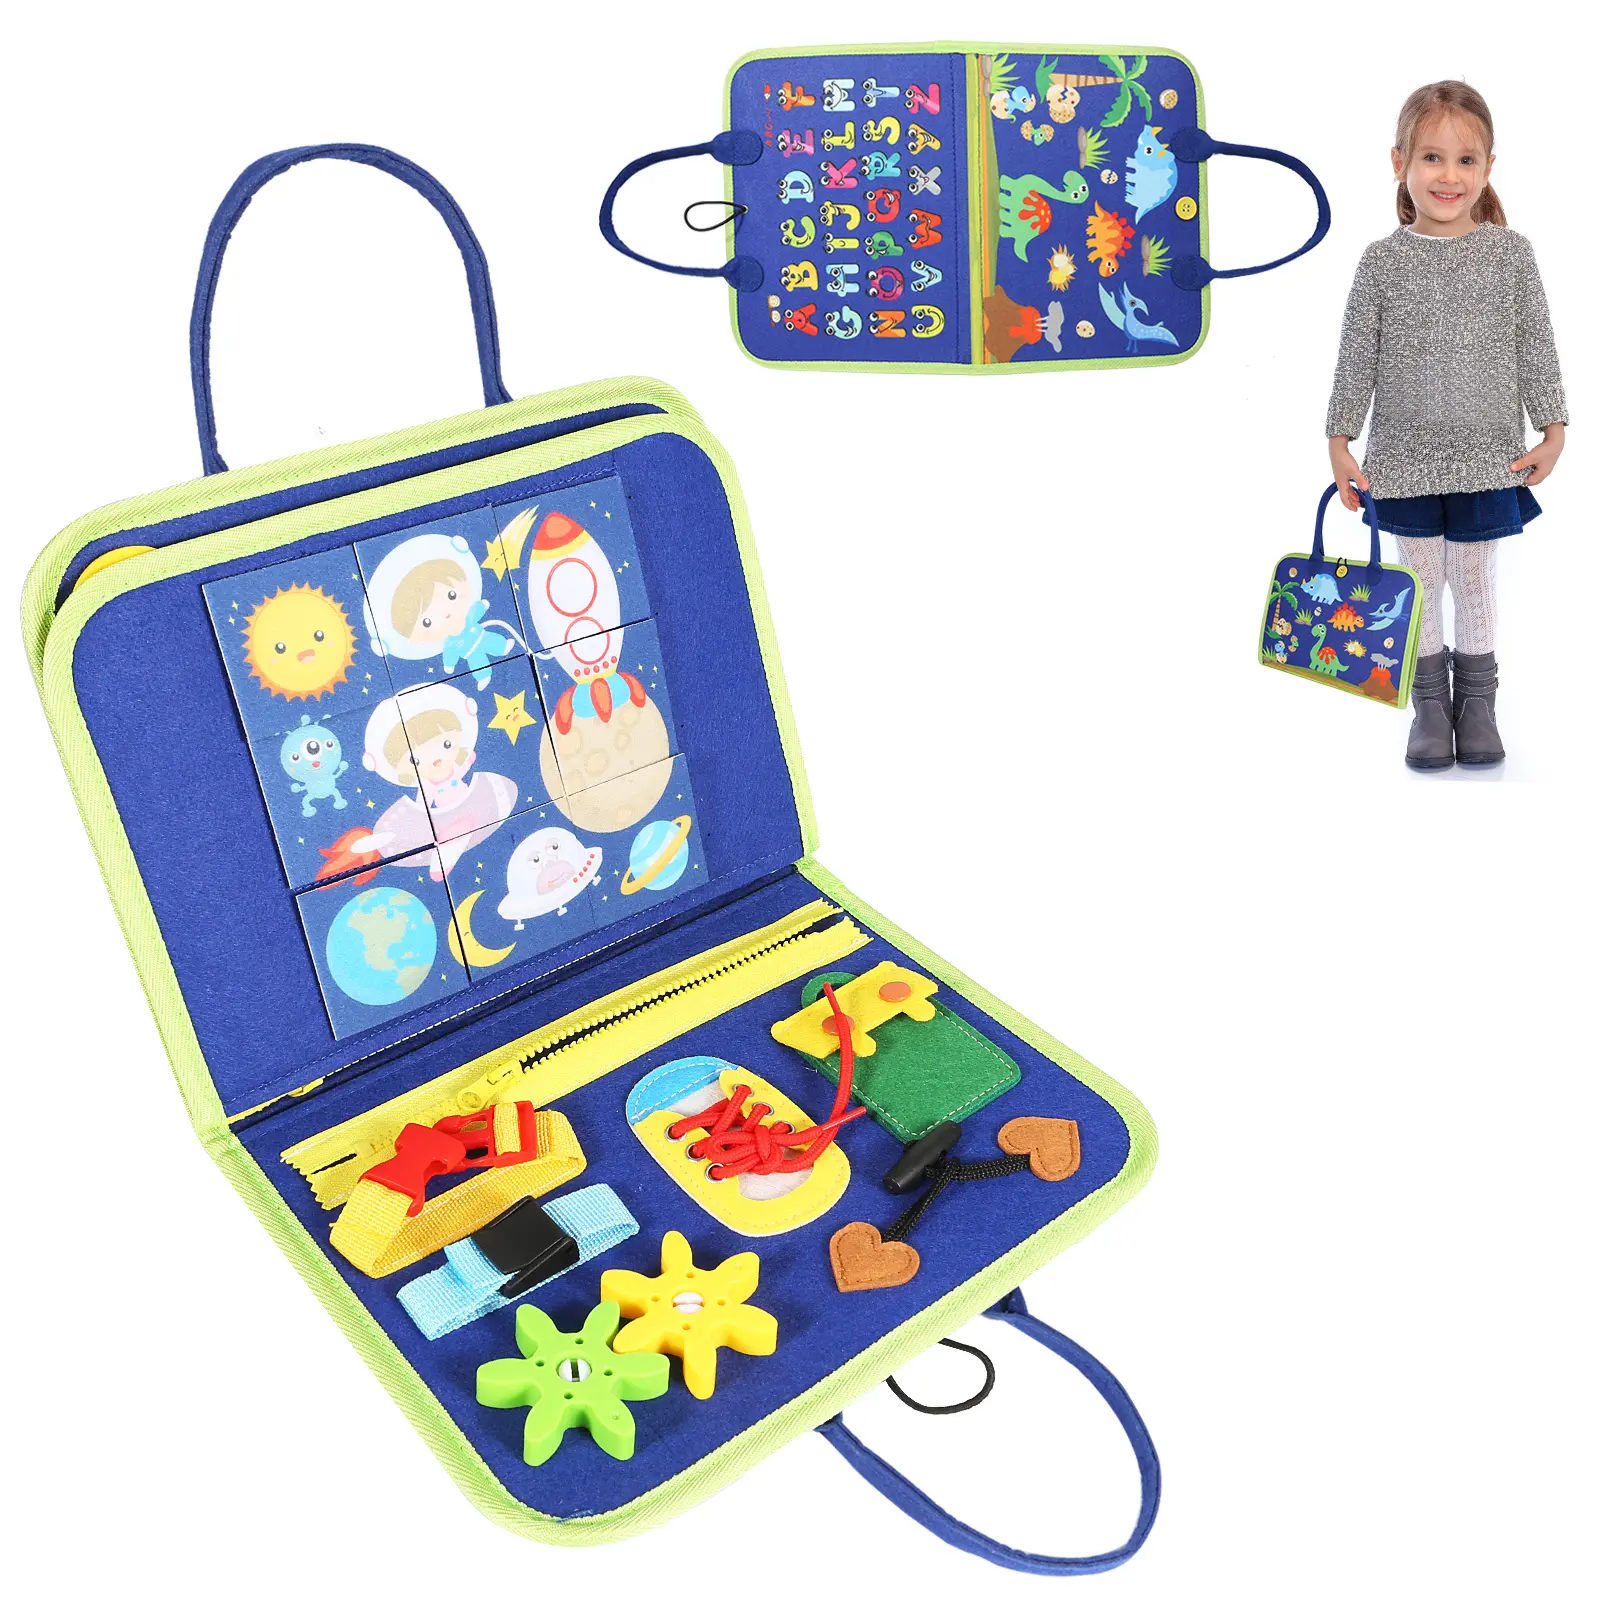 Yeni Montessori yoğun şekiller öğrenme eğitim aktivite keçe kurulu bebekler çocuklar için meşgul kurulu hissettim